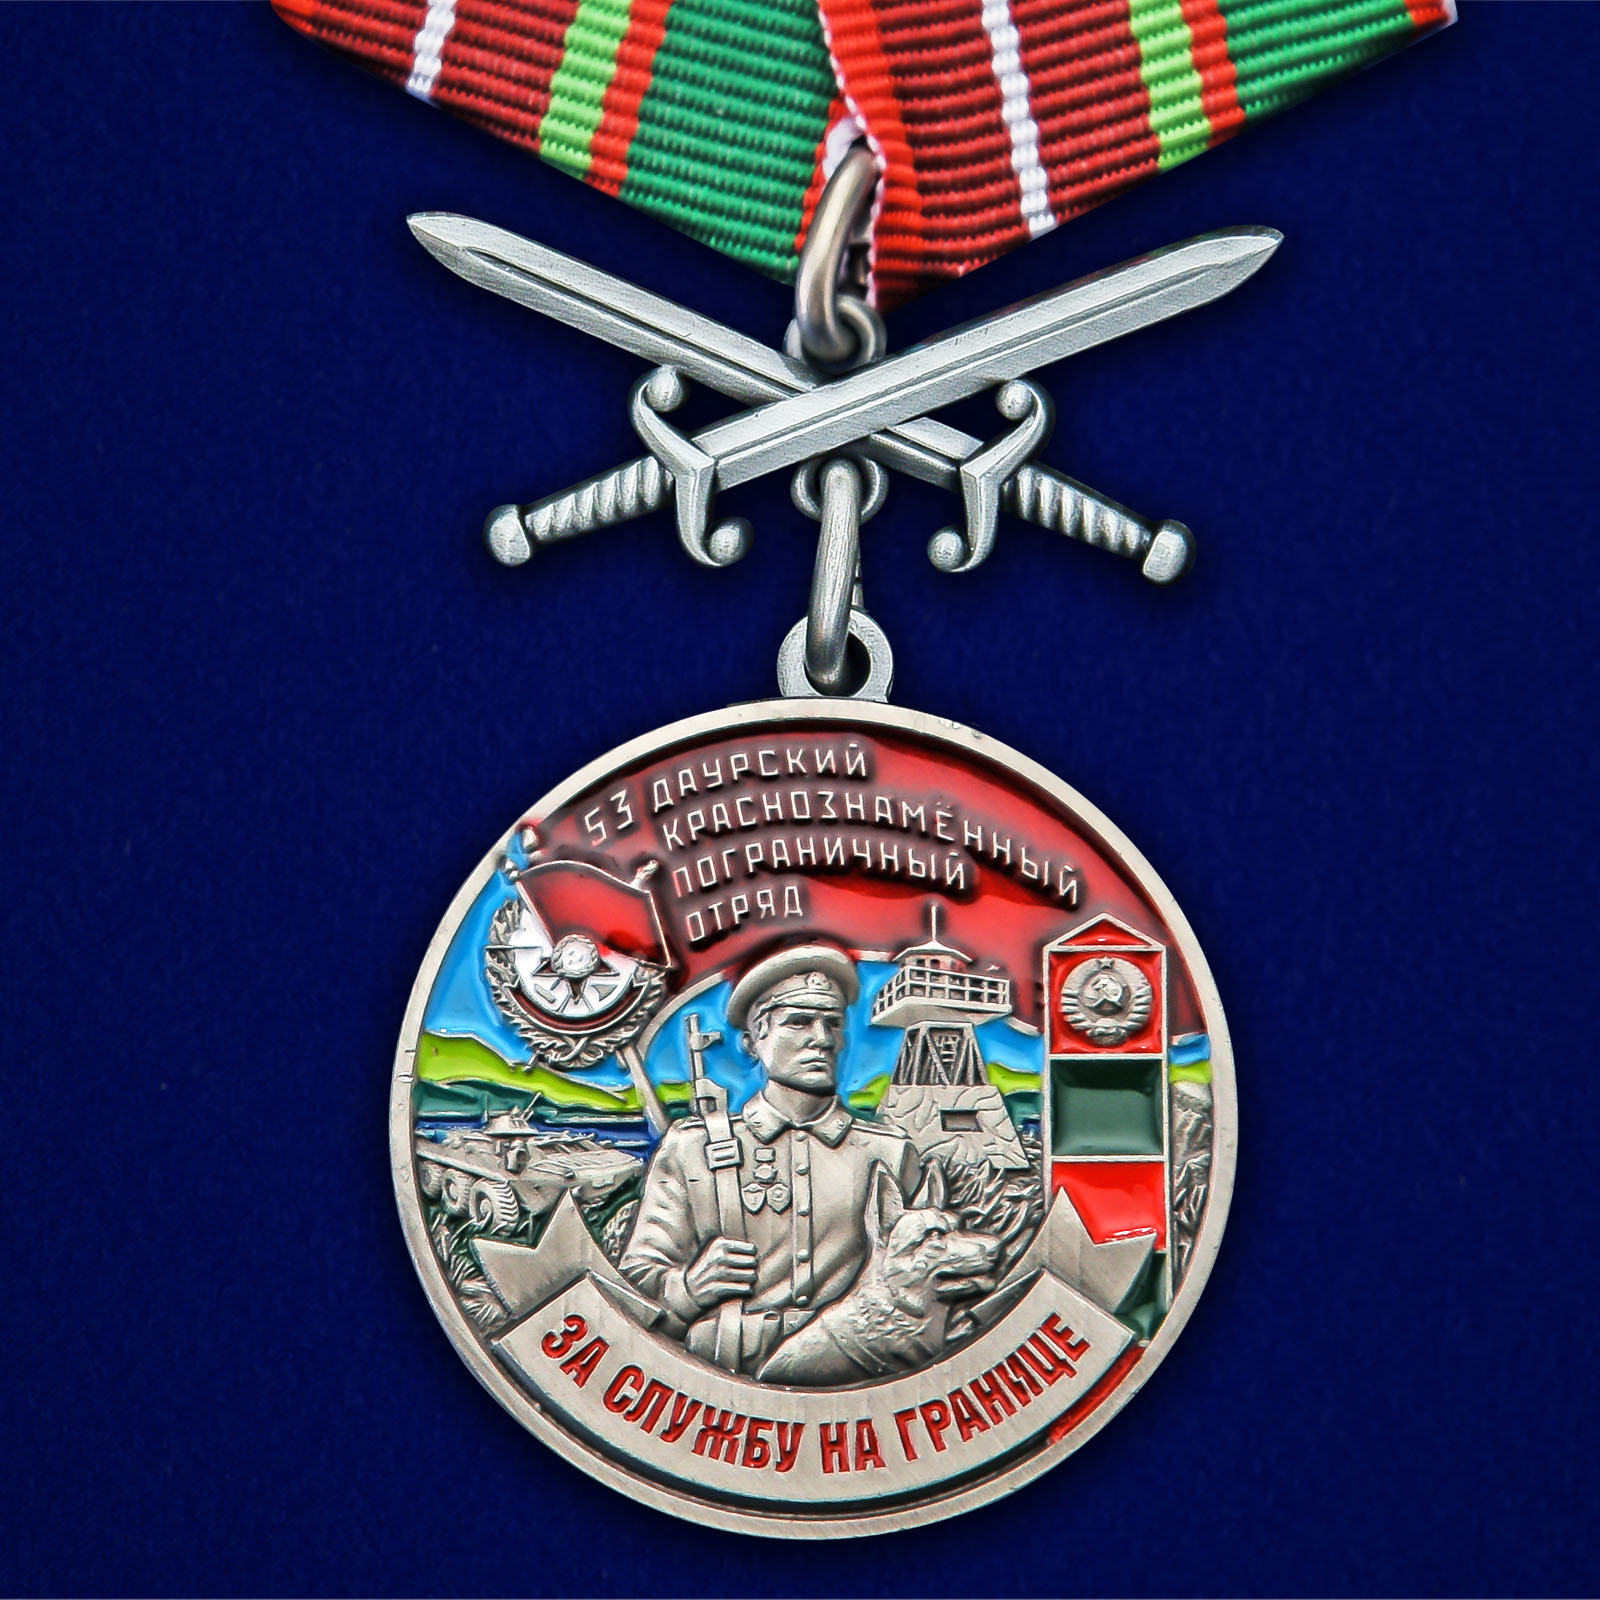 Купить медаль За службу в Даурском пограничном отряде онлайн